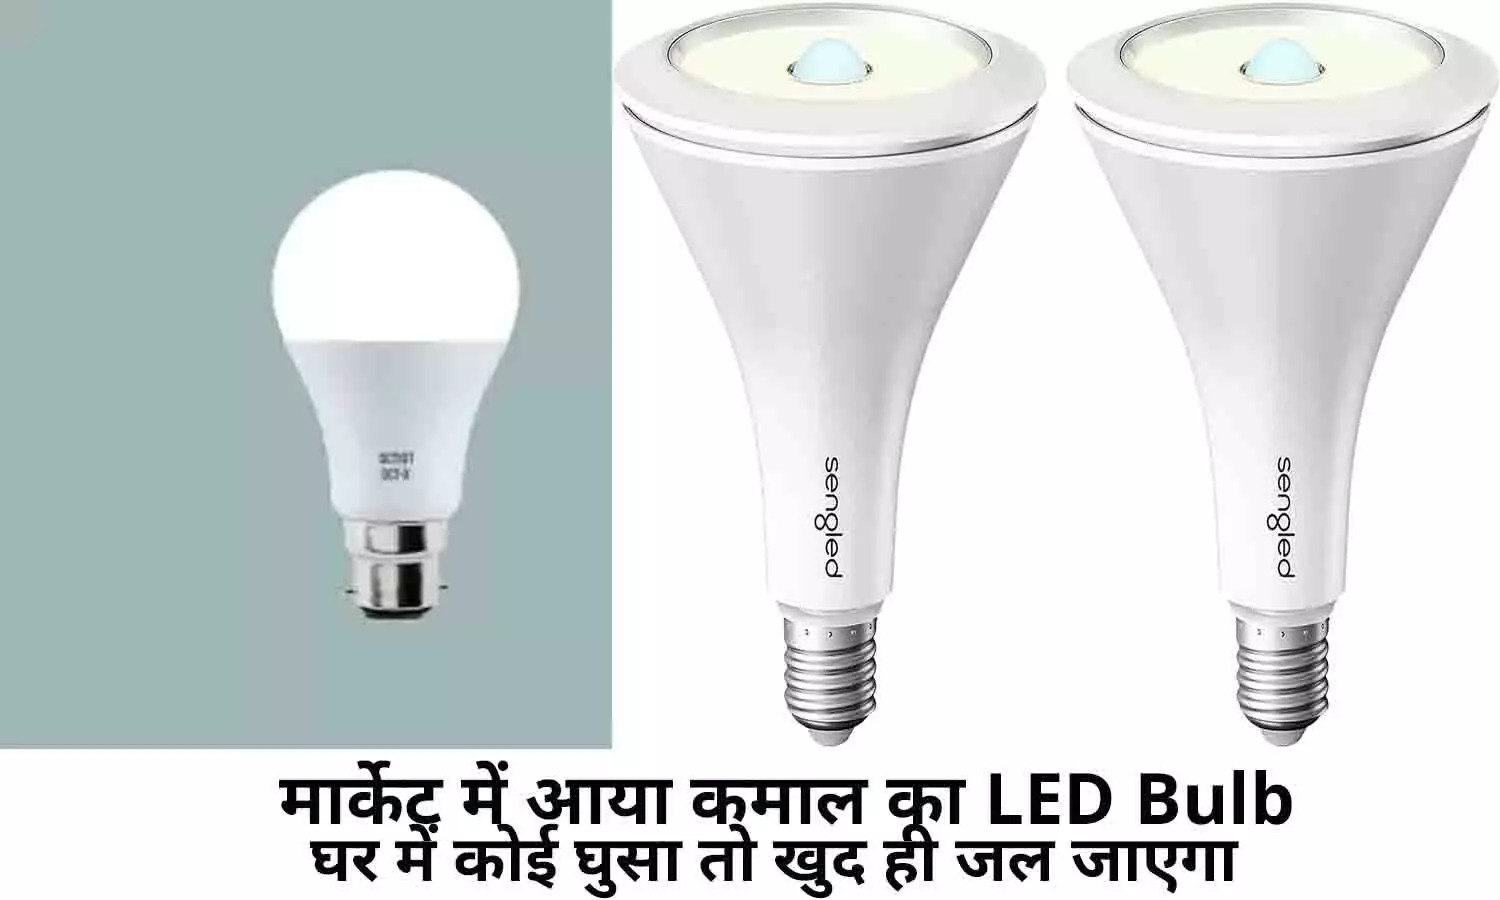 LED Bulb Price 2022: खुशखबरी! मार्केट में आया कमाल का LED Bulb, घर में कोई घुसा तो खुद ही जल जाएगा, फटाफट खरीदे